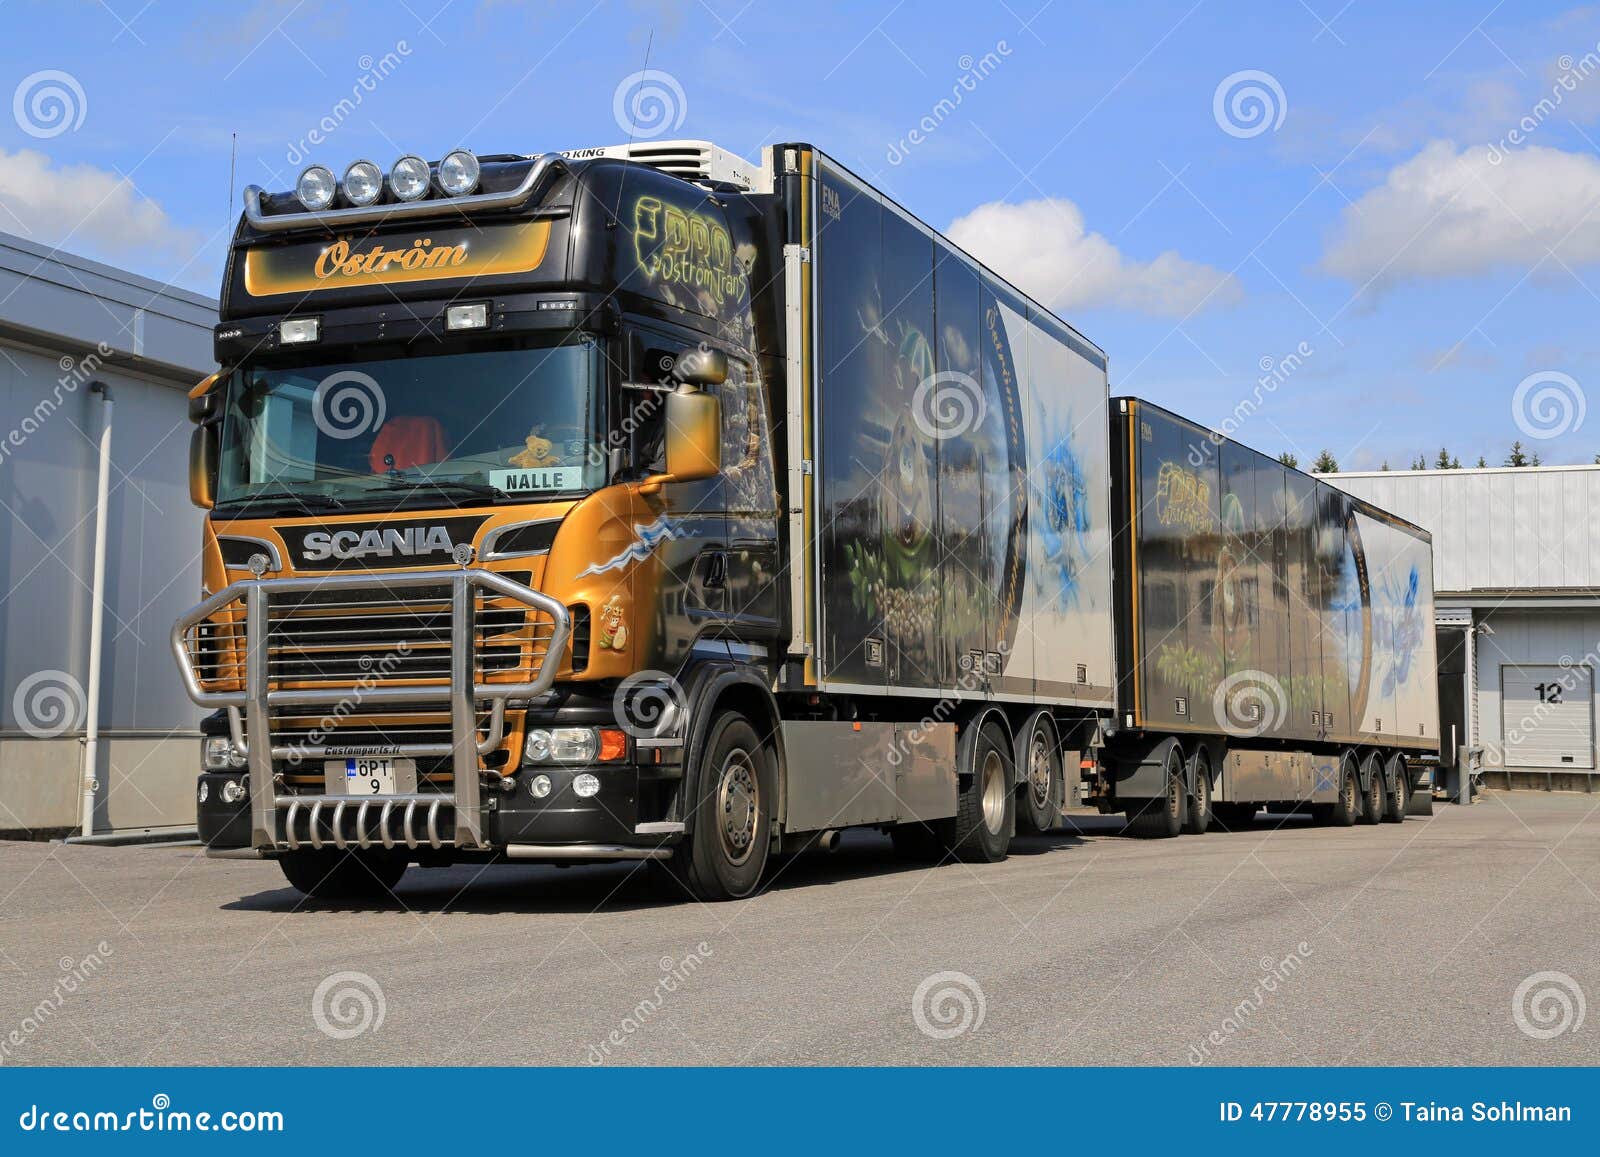 Le Camion De Remorque Accessoirisé De Scania V8 Transporte Les